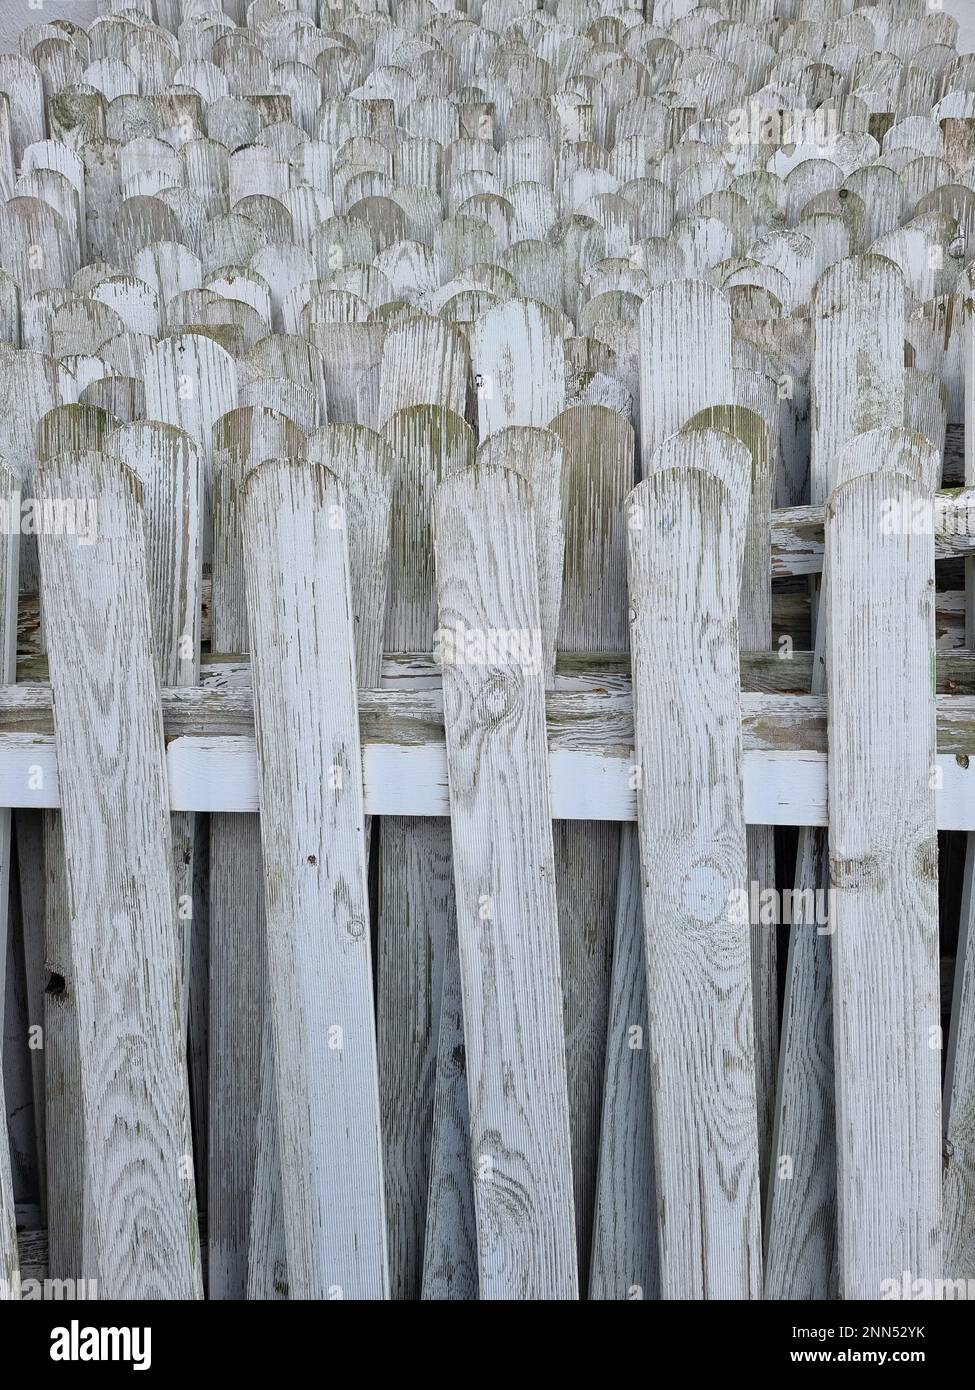 Clôtures de jardin. Vieilles clôtures en bois peintes en blanc empilées les unes sur les autres. Banque D'Images